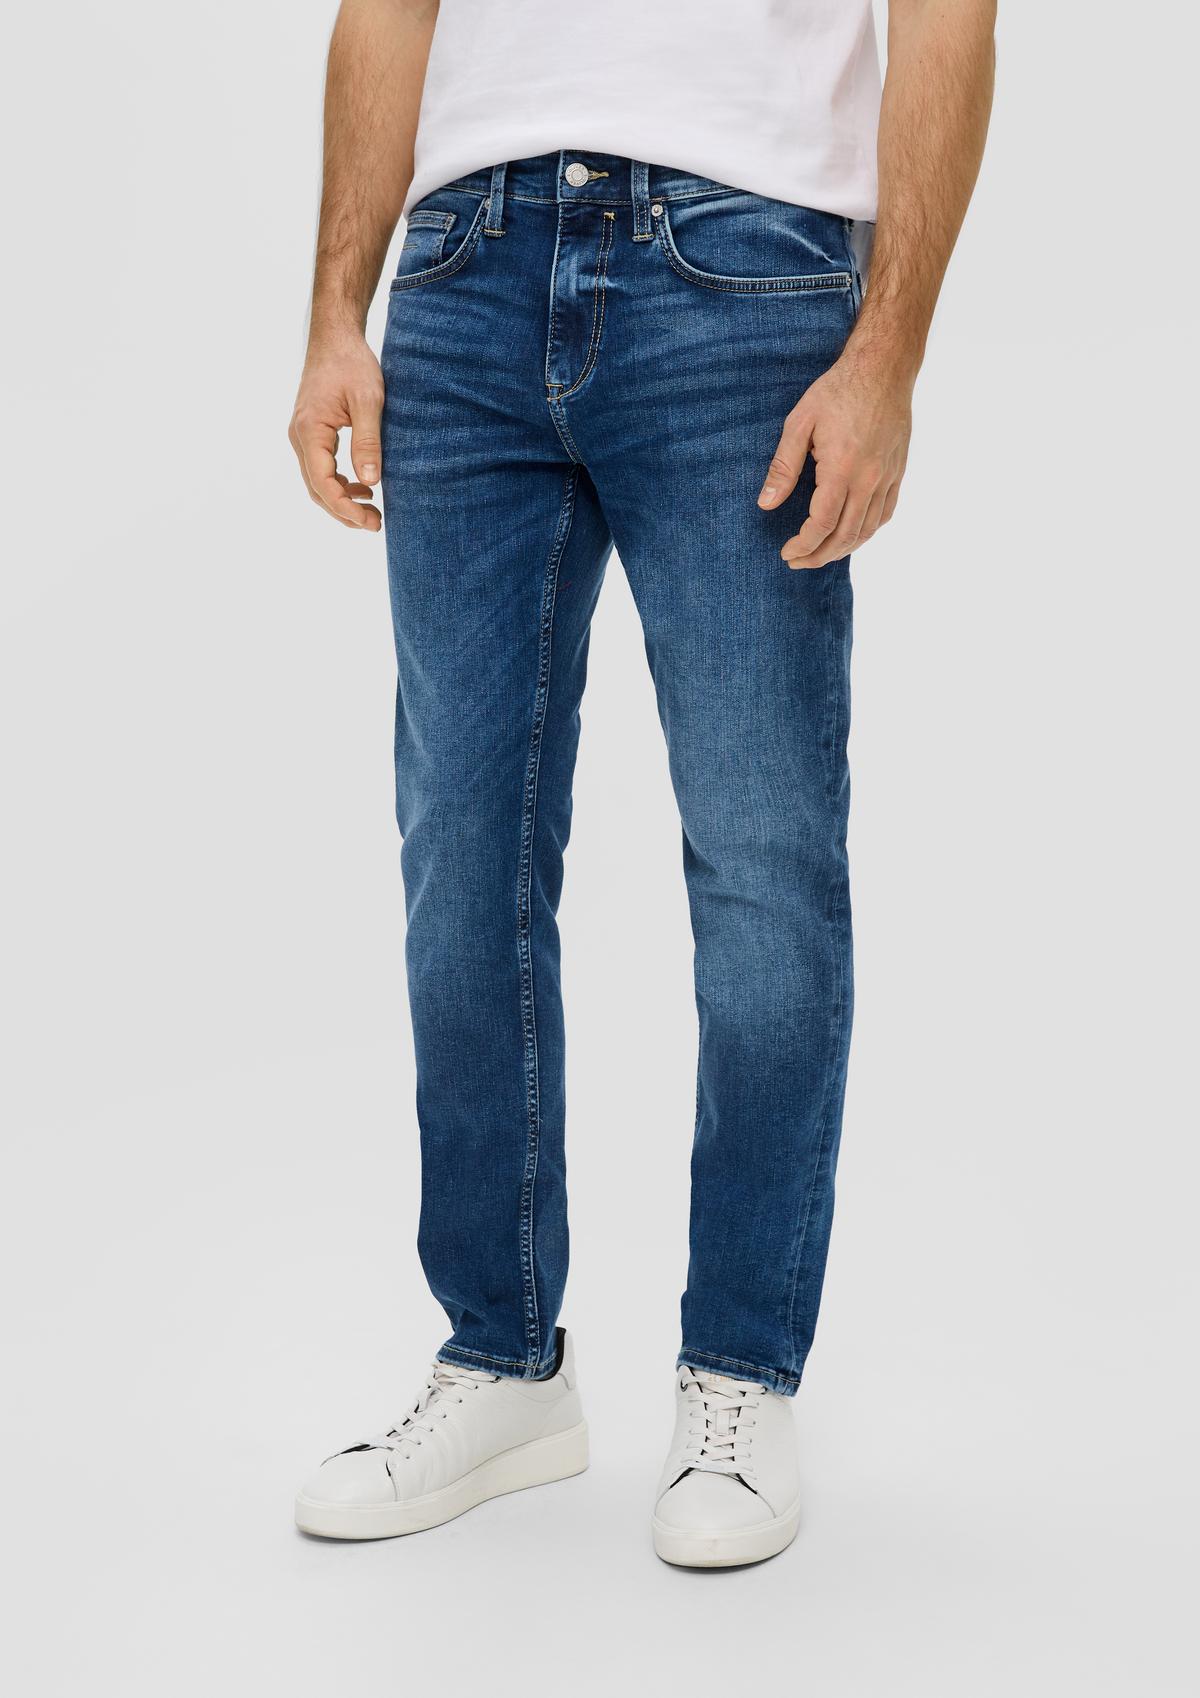 s.Oliver Nelio jeans / slim fit / mid rise / slim leg